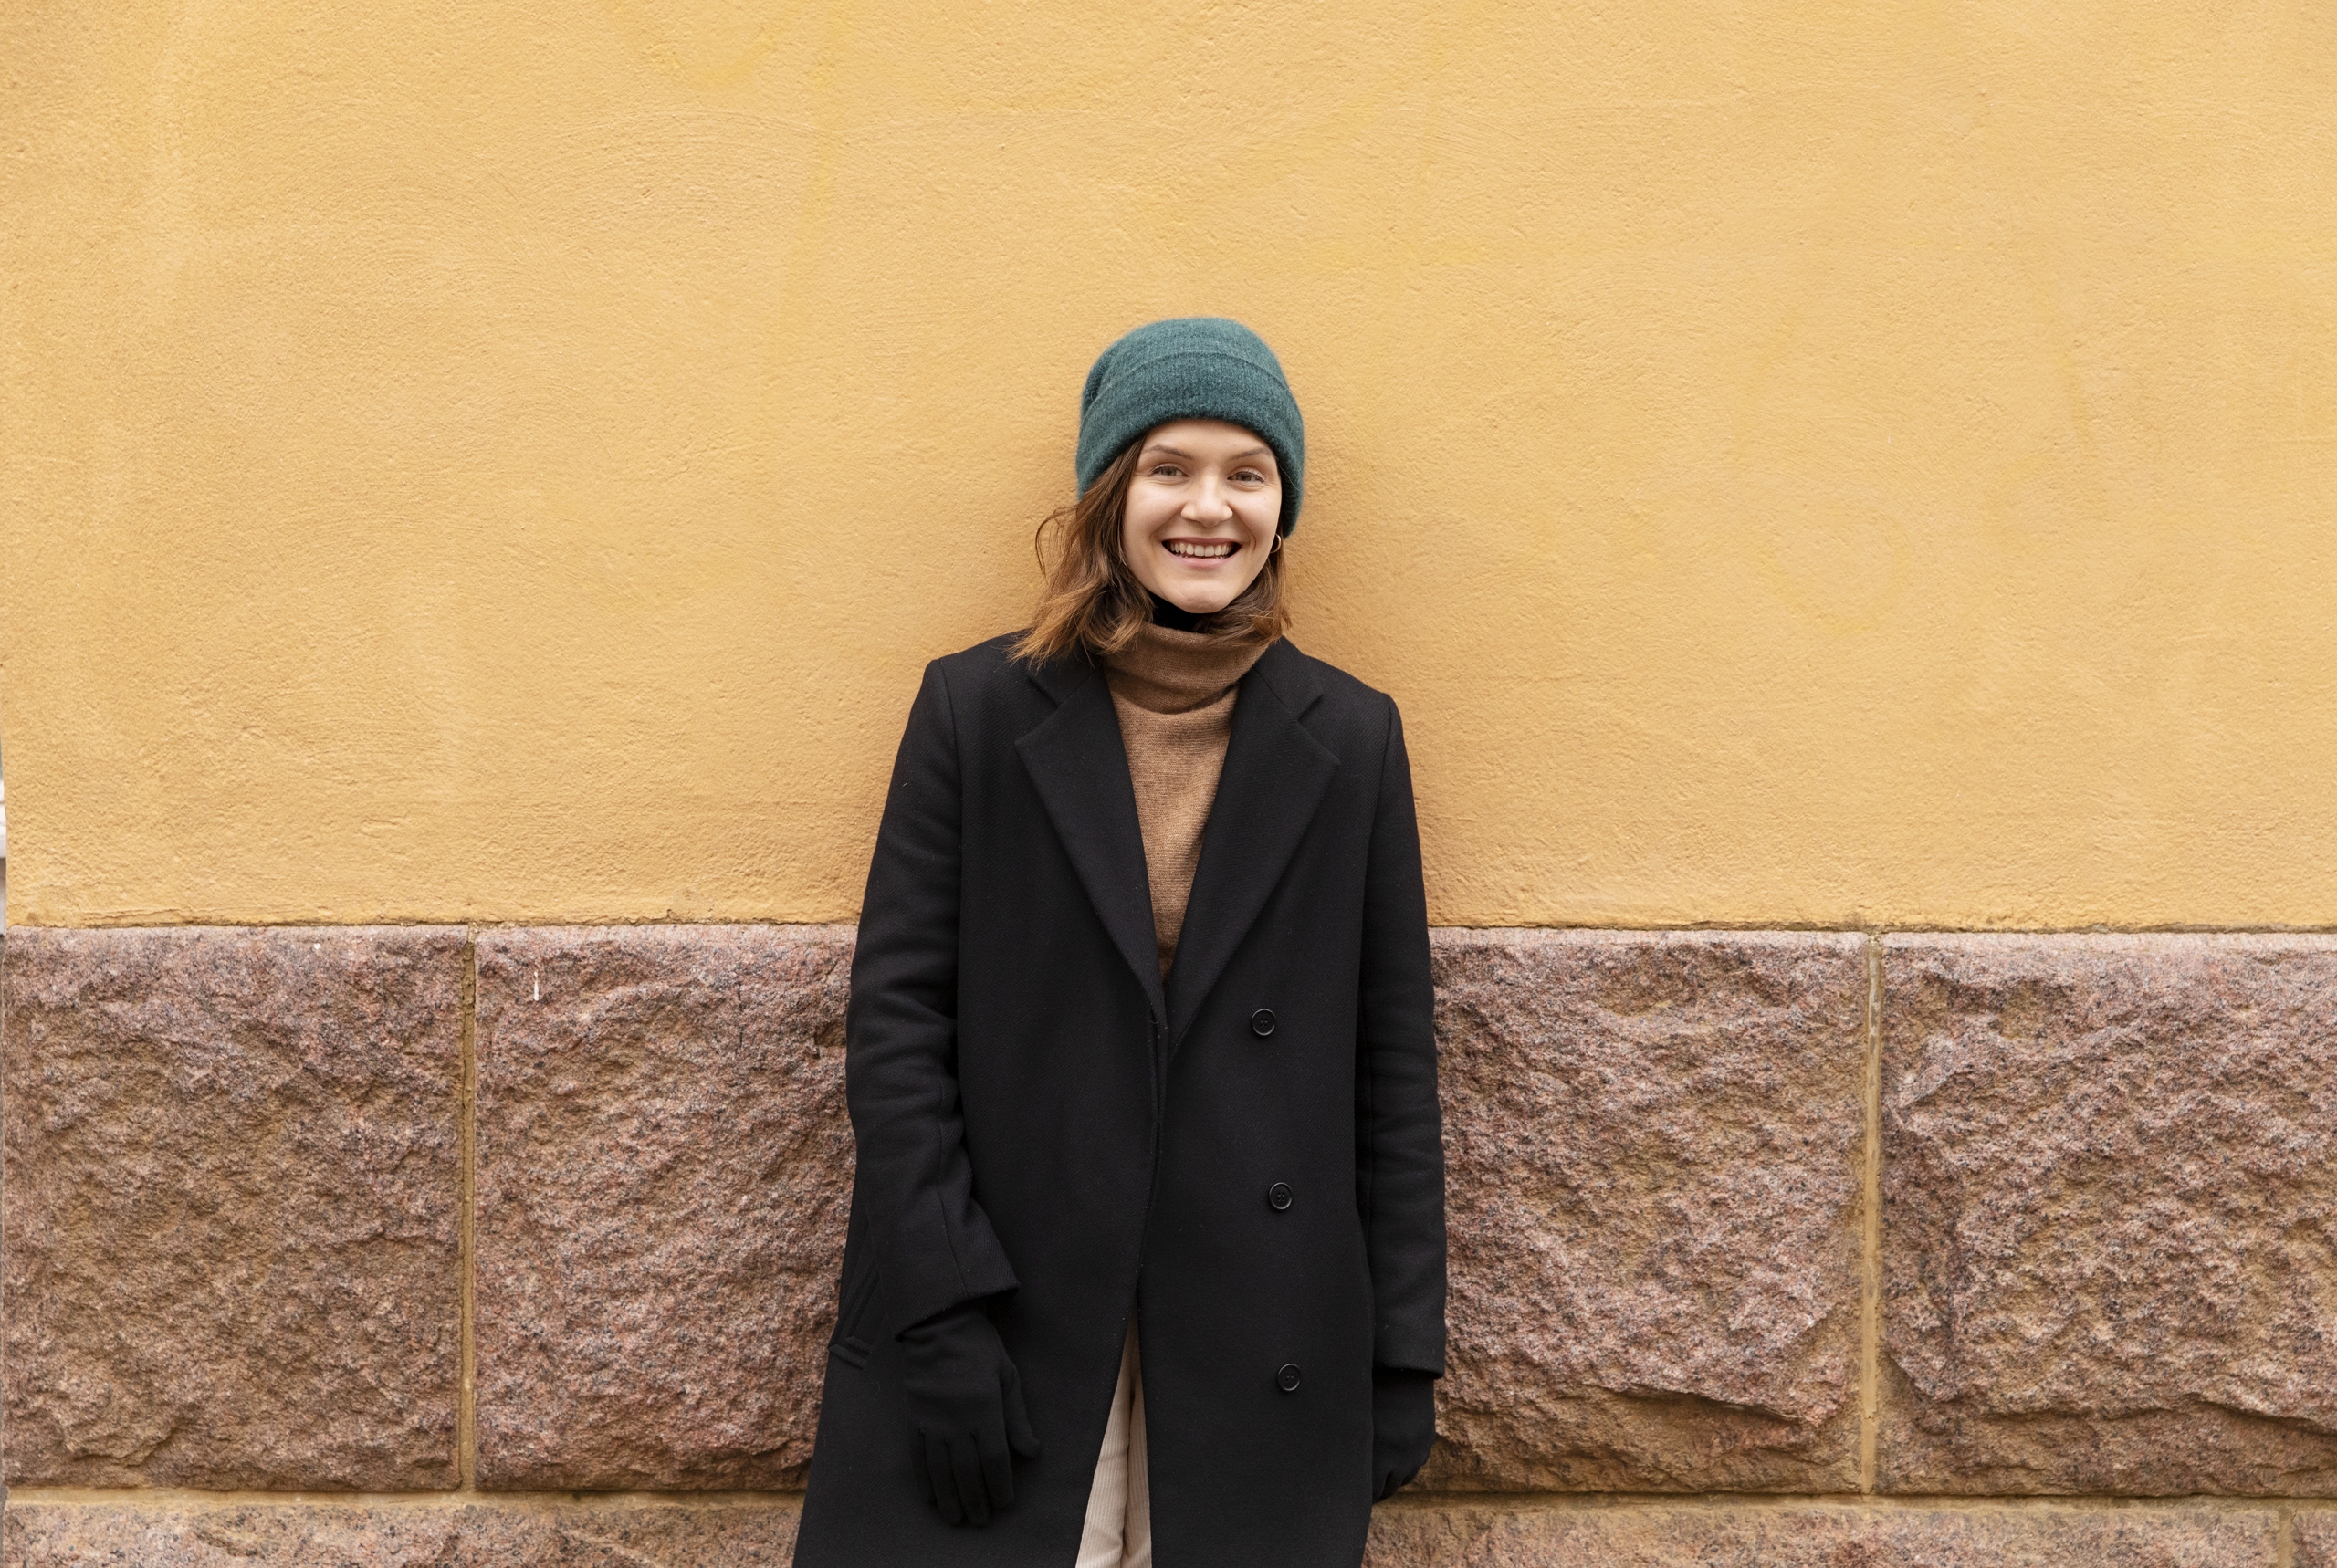 Kuvassa Ronja Salmi nojaa oranssiin seinään ja katsoo kameraan hymyillen. Hänellä on vihreä pipo ja musta takki.